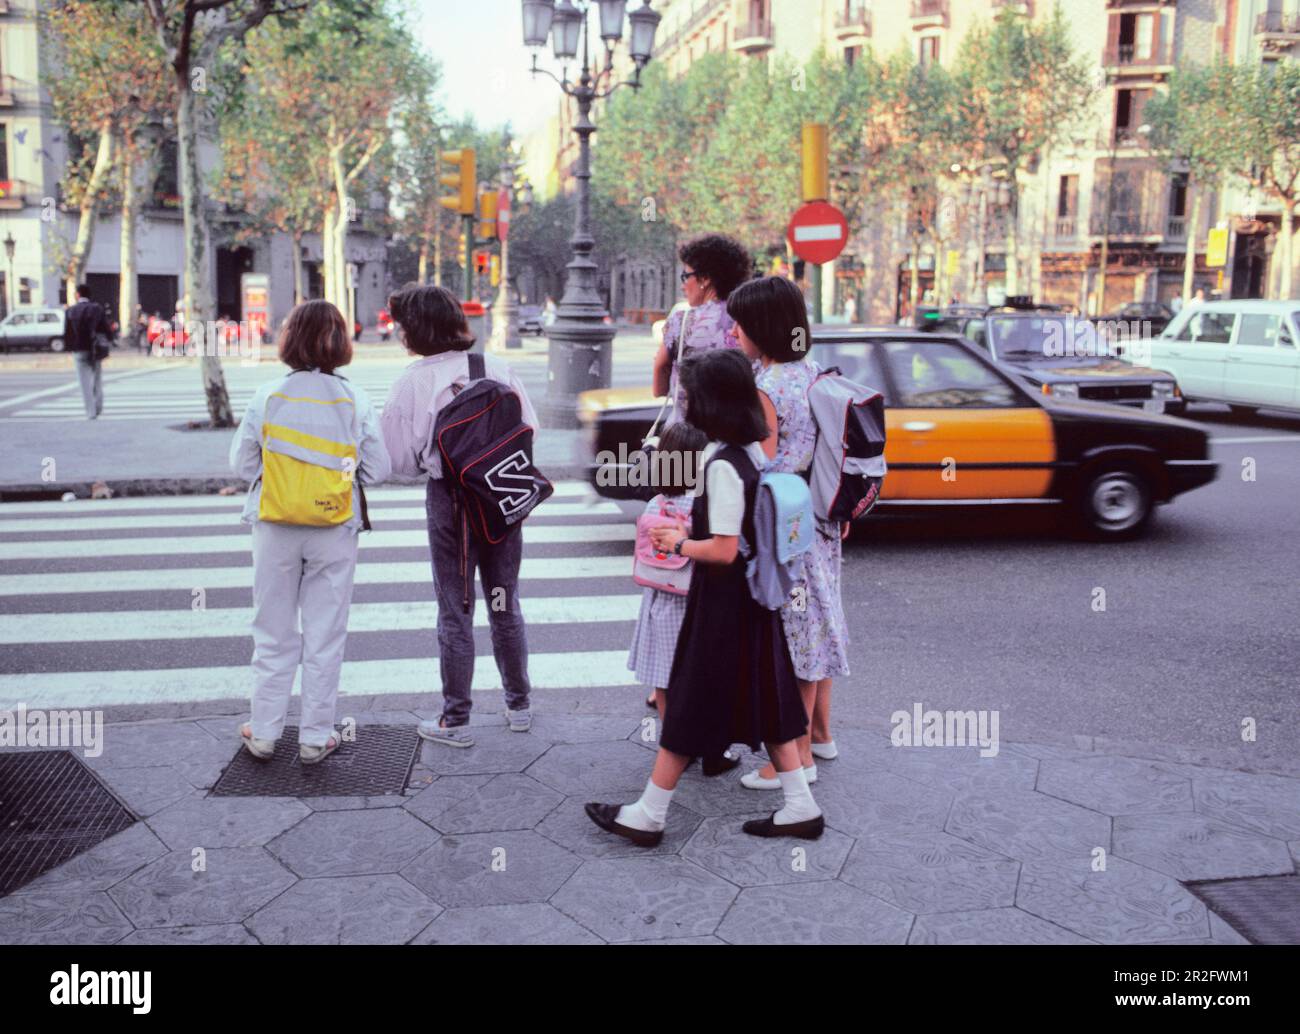 Barcelona Spain Schoolchildren with backpacks. Schoolgirls heading to school. Children in Barcelona at a zebra crossing on street corner. Stock Photo